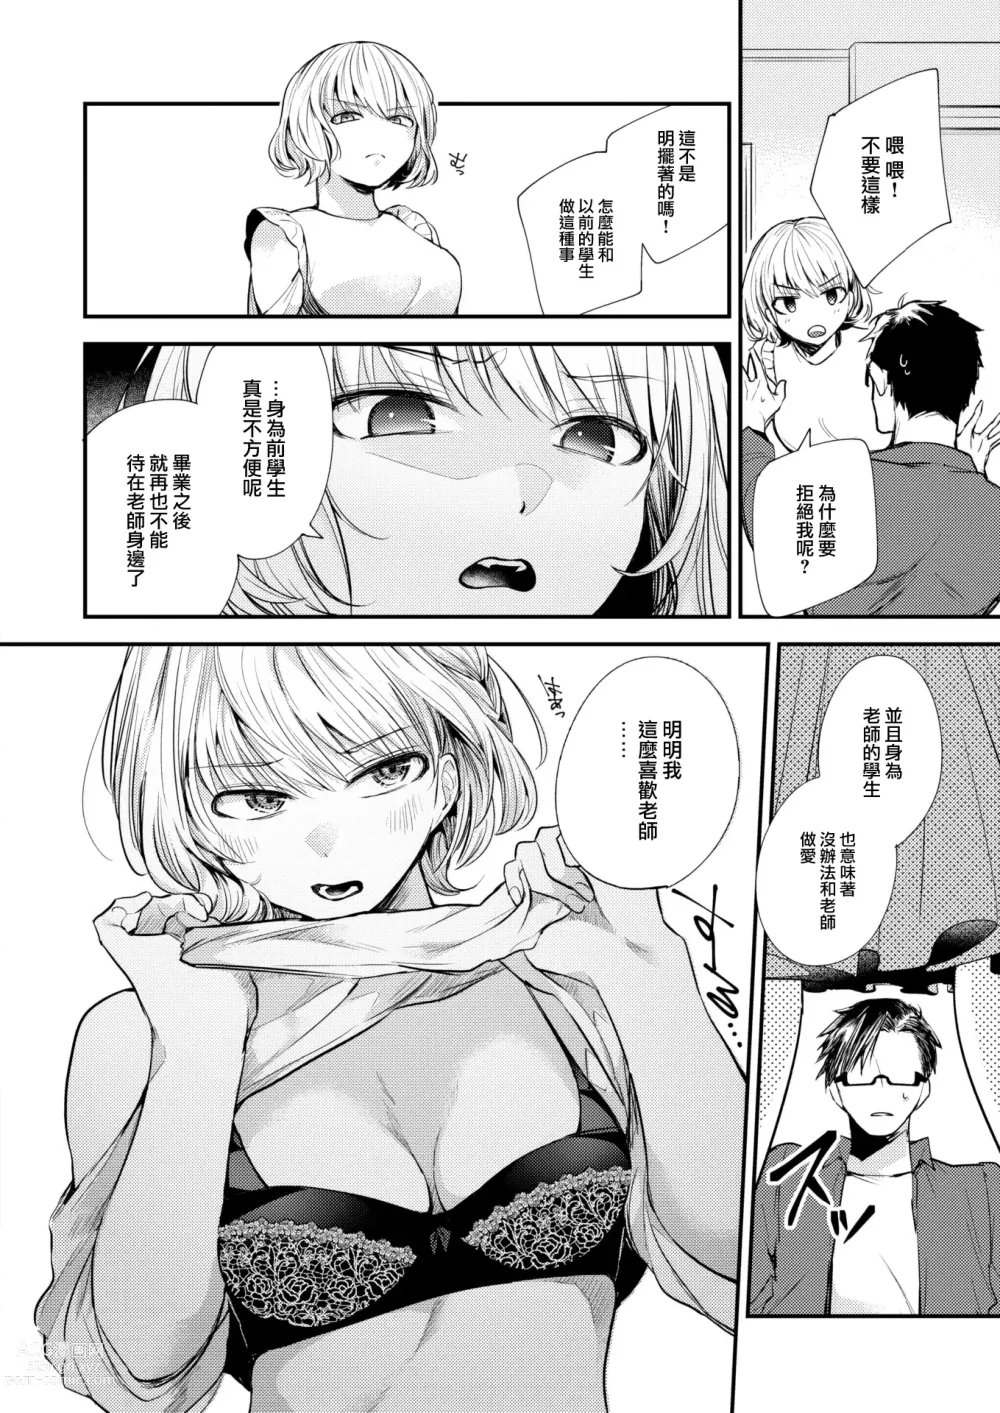 Page 11 of manga Sekishun no Jou